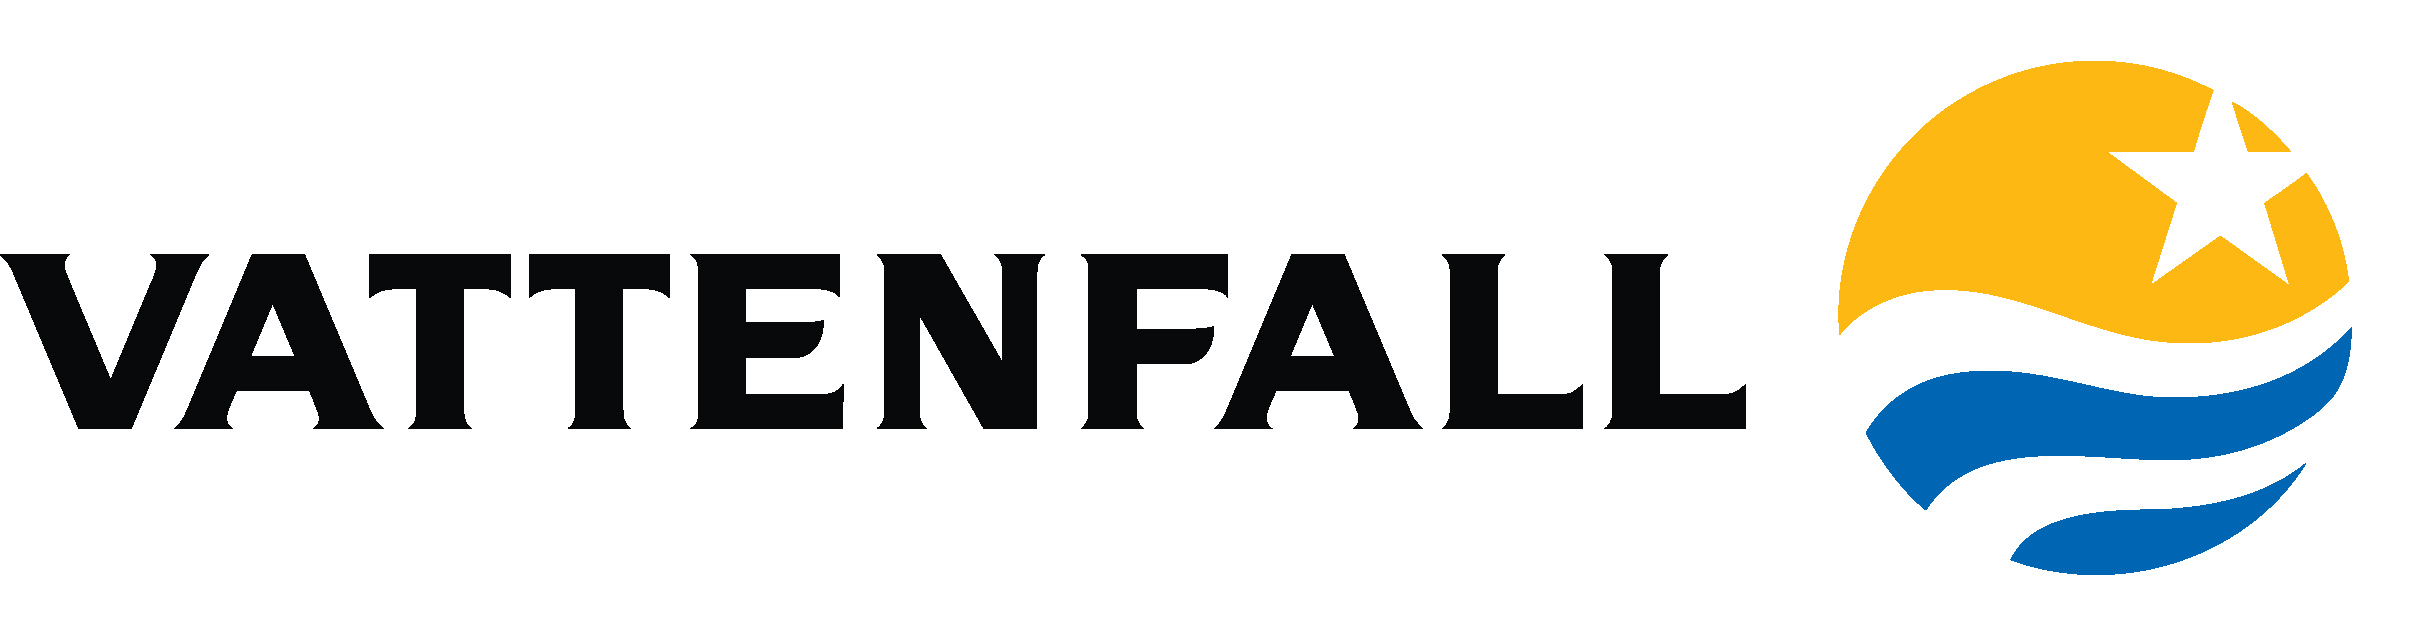 vattenfall-logo.jpg